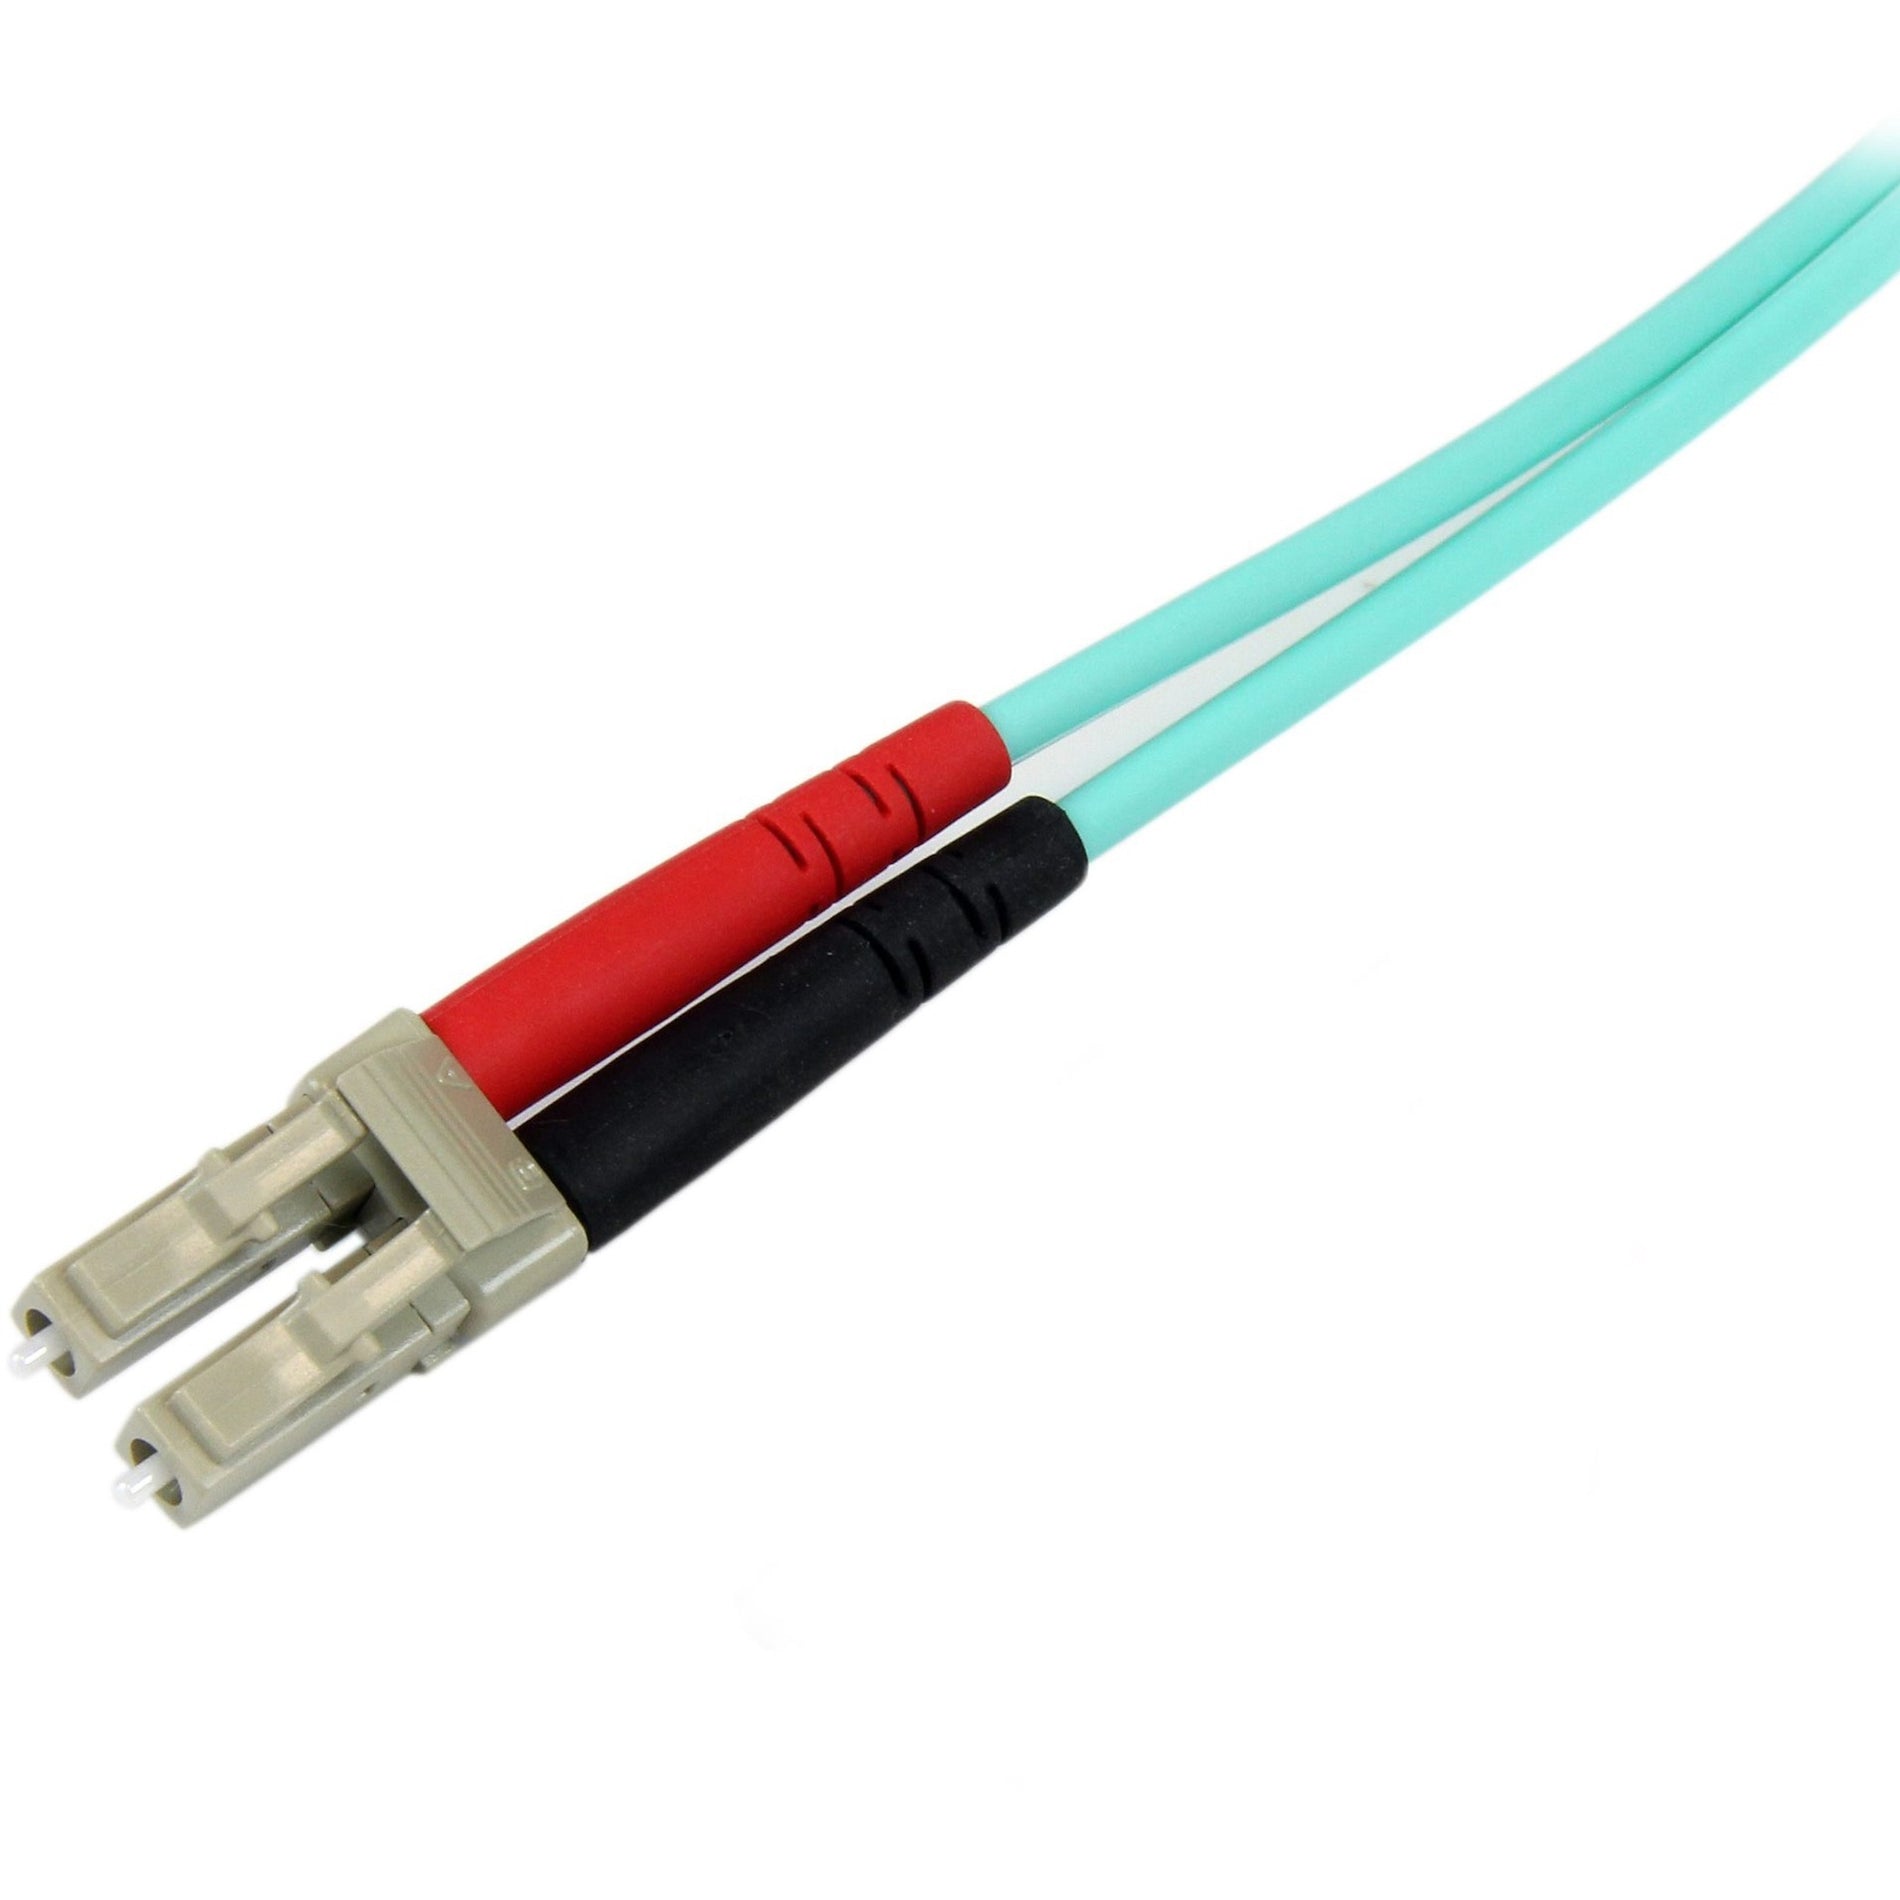 StarTech.com A50FBLCSC2 10Gb Aqua Fiber Patch Cable - LC Multi-mode (M) - SC Multi-mode (M) - 2m, LSZH Jacket, Lifetime Warranty